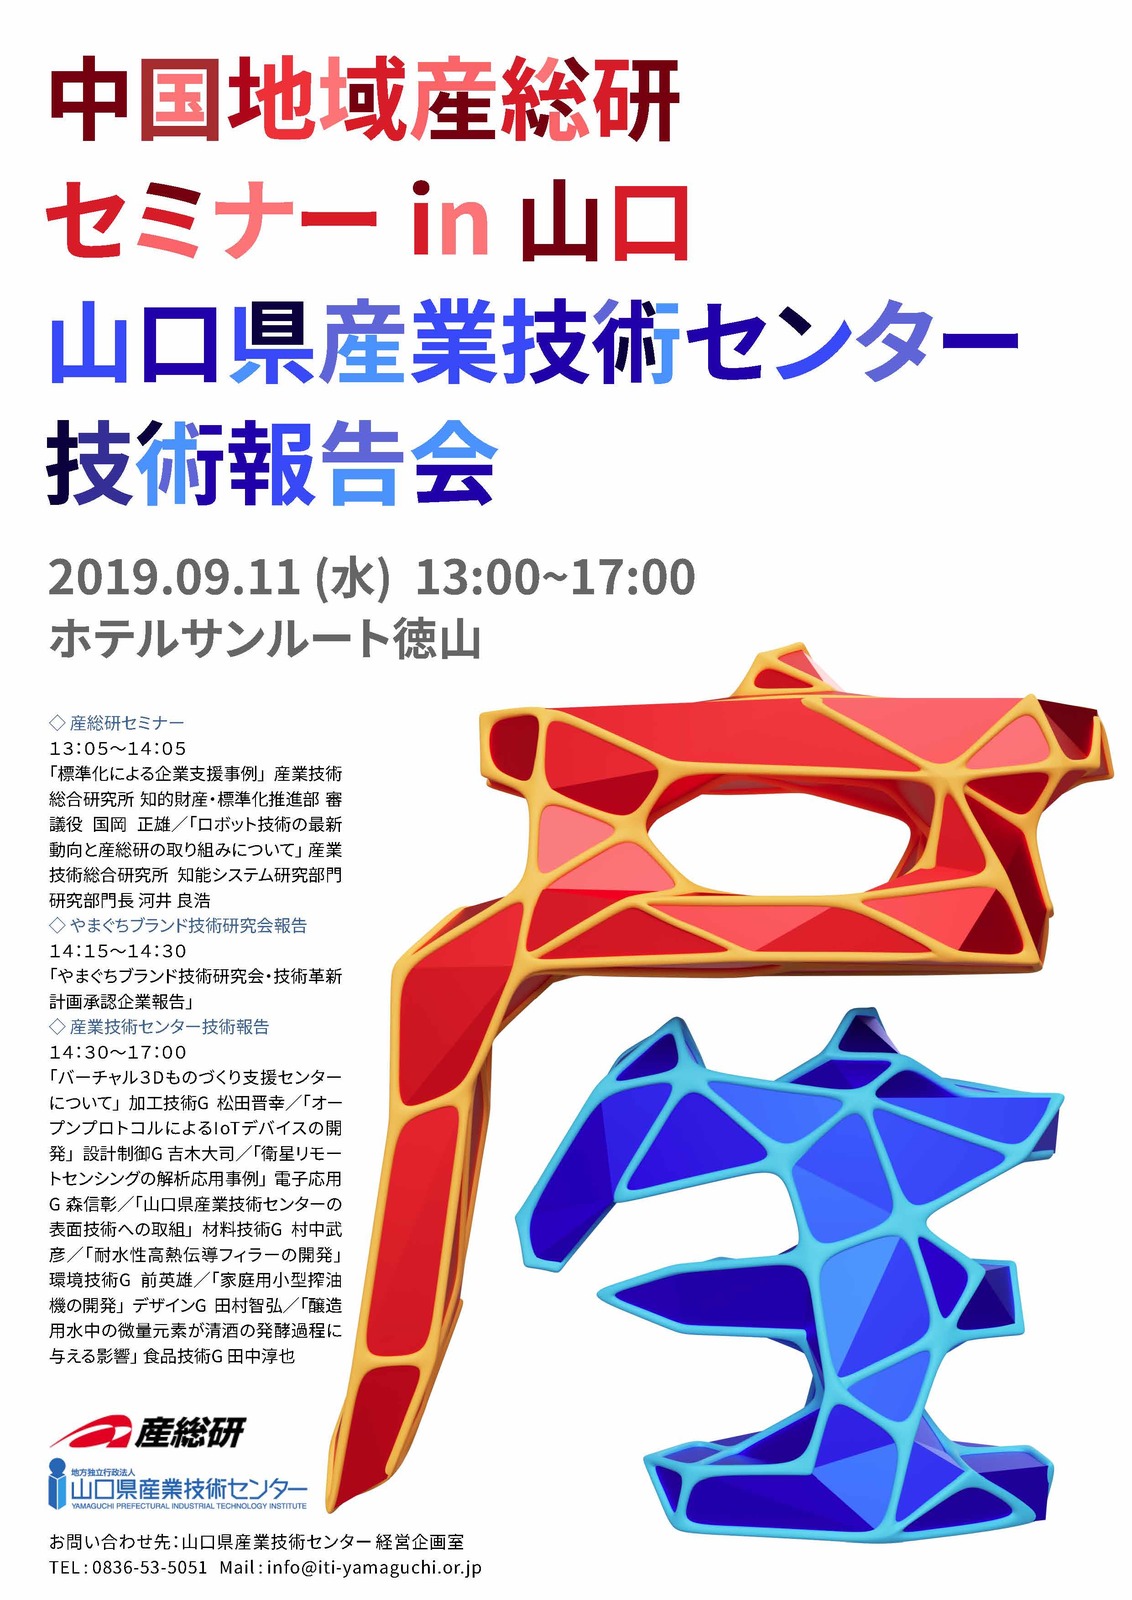 【チラシHP用】技術報告会20190911.jpg